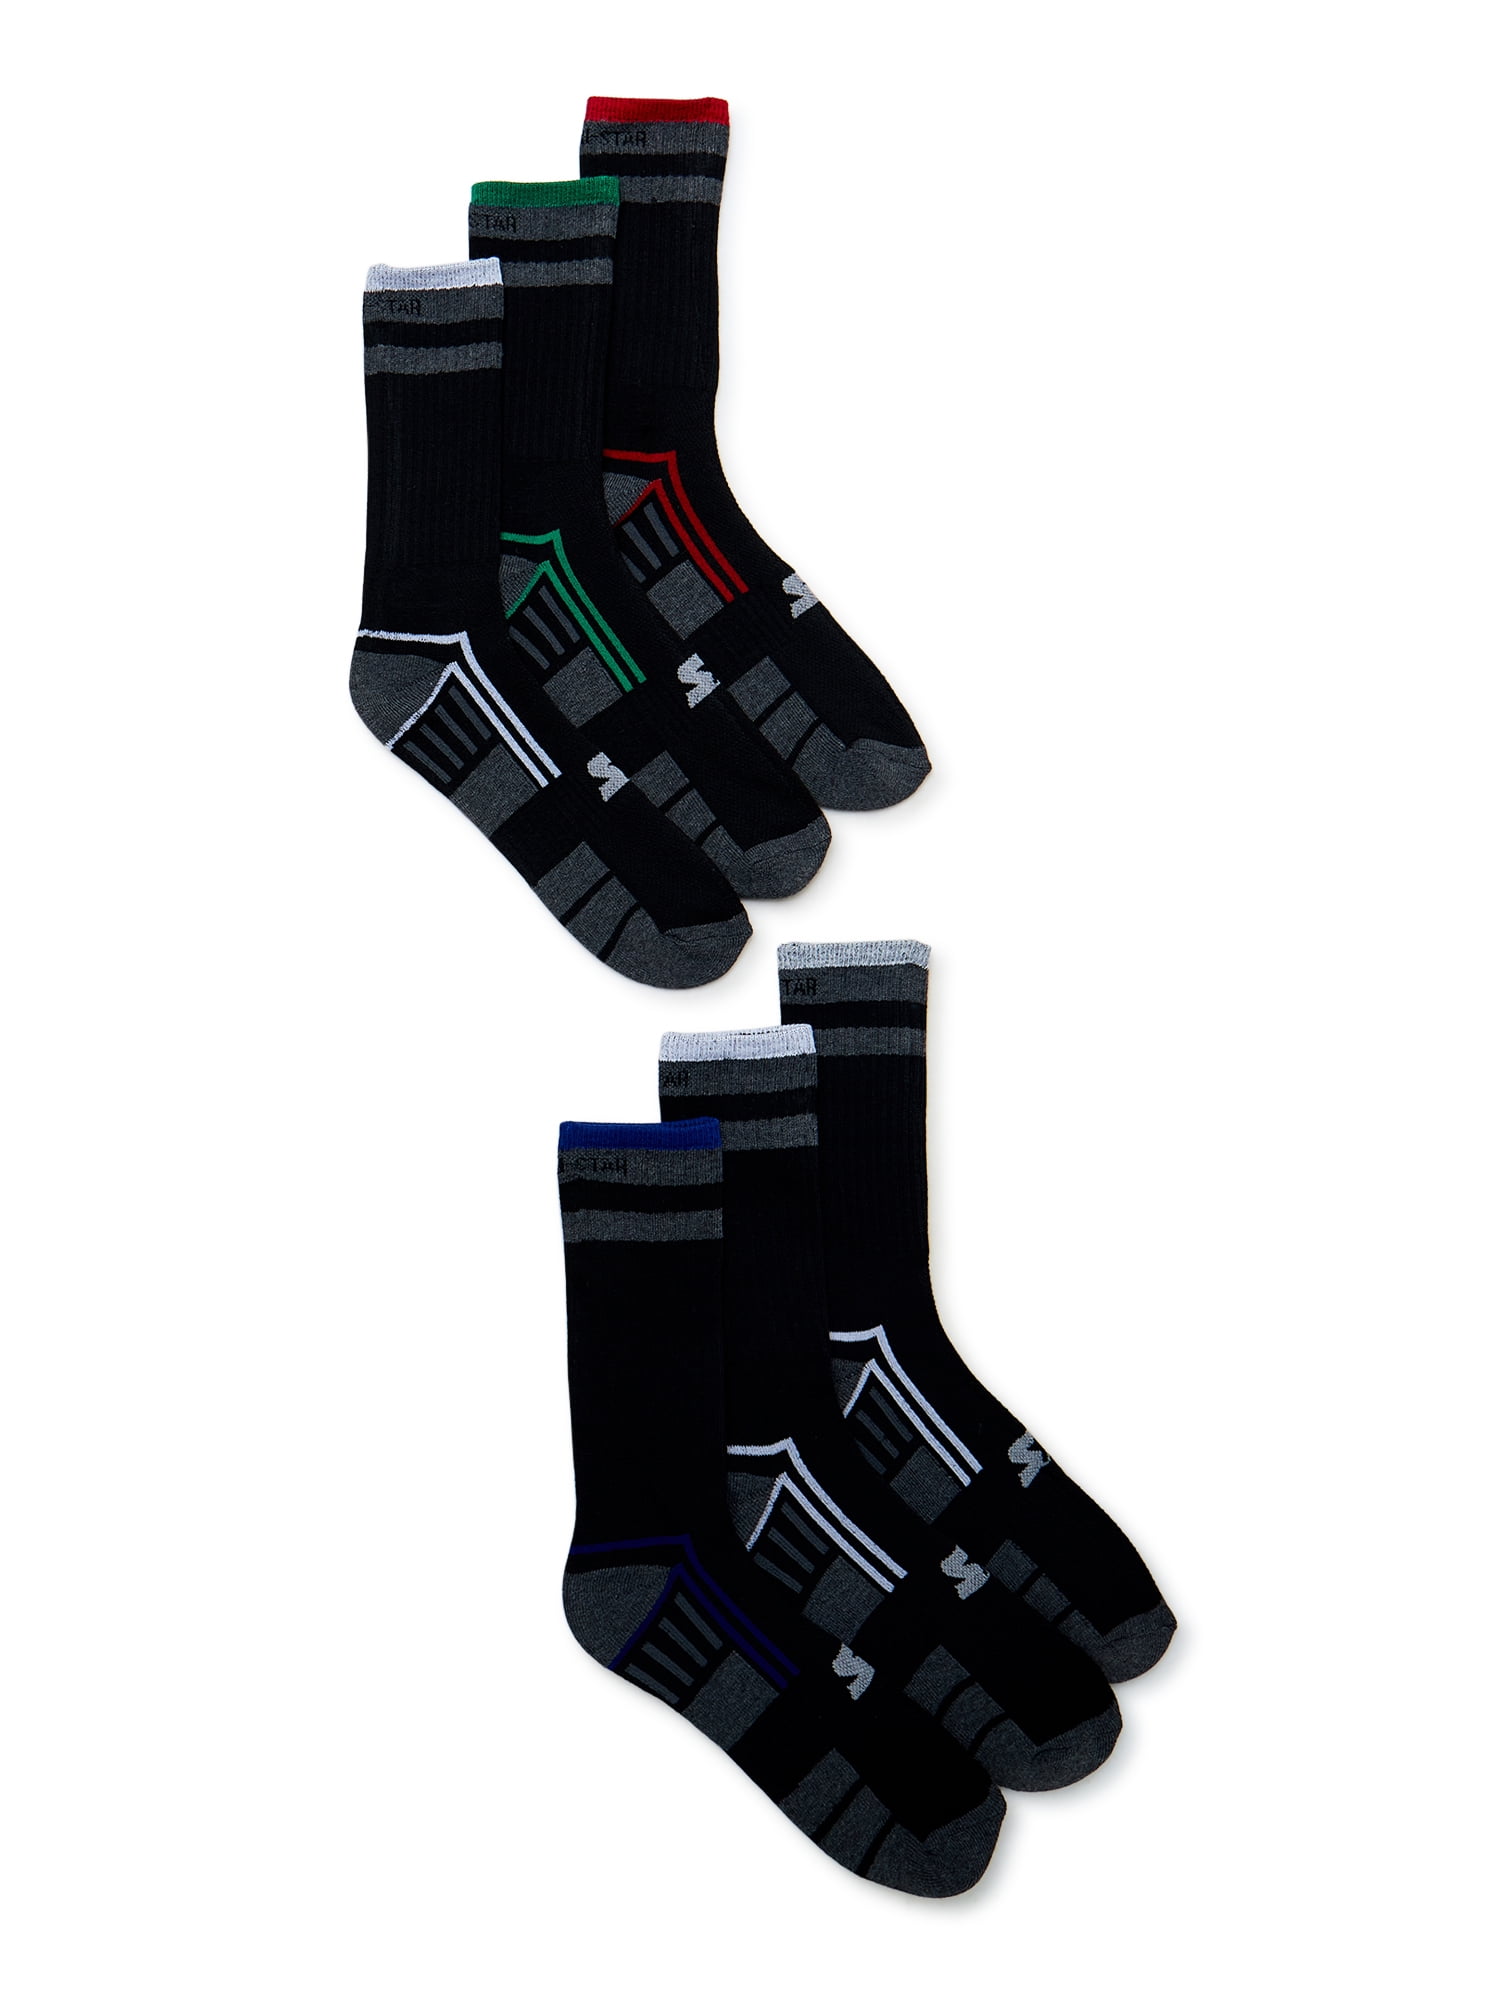 H HANDOOS Mens Socks Quick Dry Socks Men 6-9 Athletic Socks Men